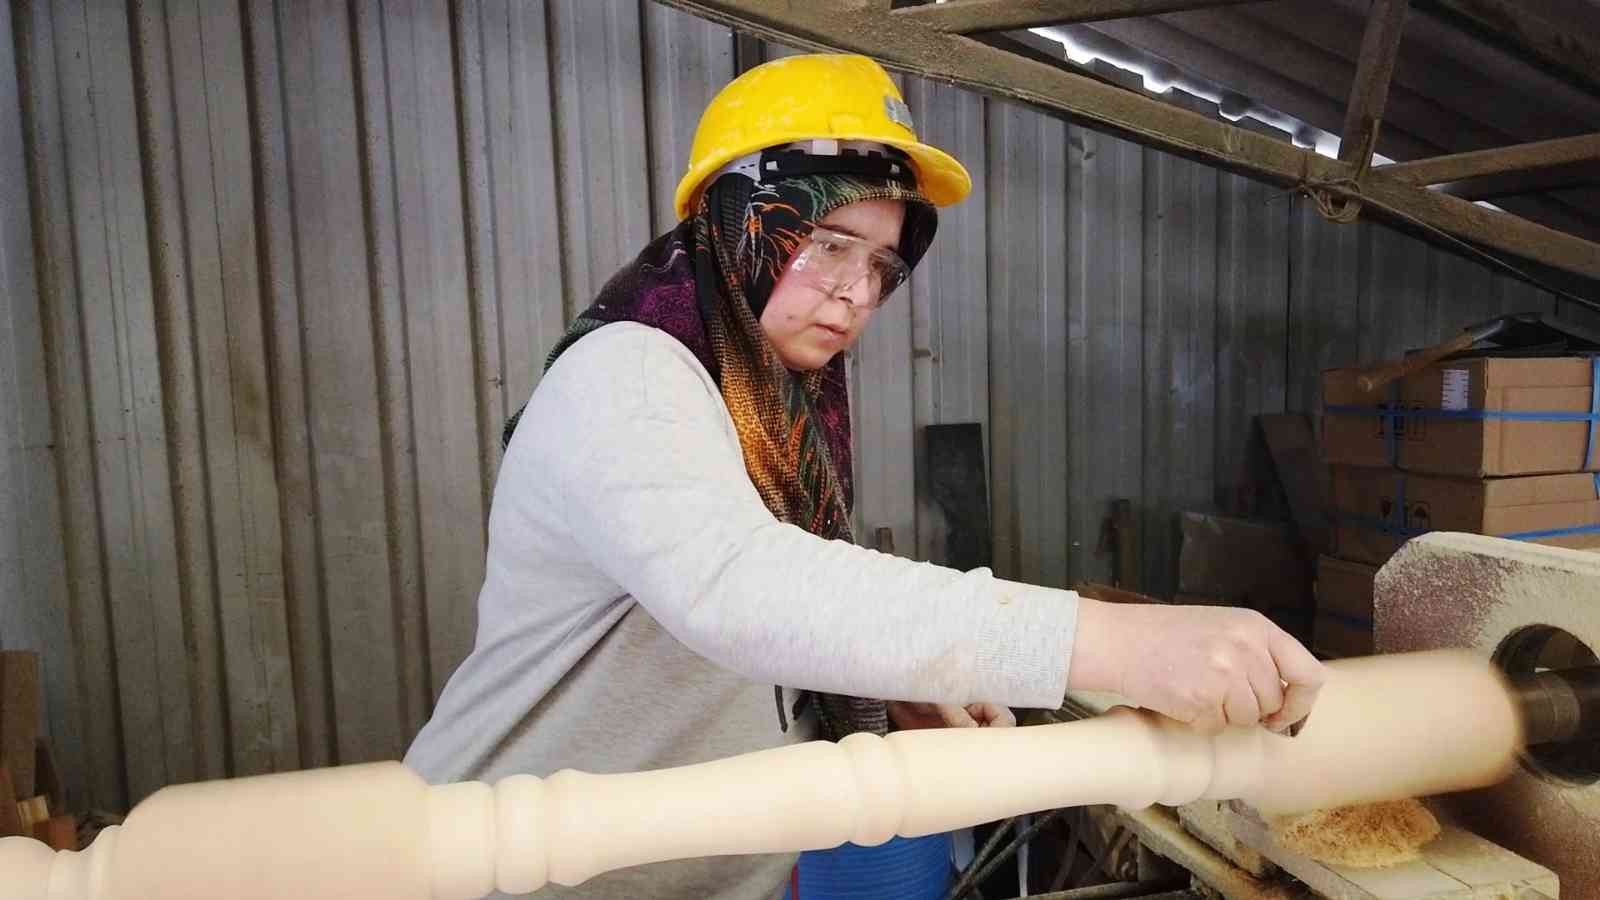 Balıkesir’in Dursunbey ilçesinde 38 yaşındaki iki çocuk annesi Kezban Varol, ağaç sanayisinde çalışan tek kadın tornacı olarak dikkat çekiyor ...